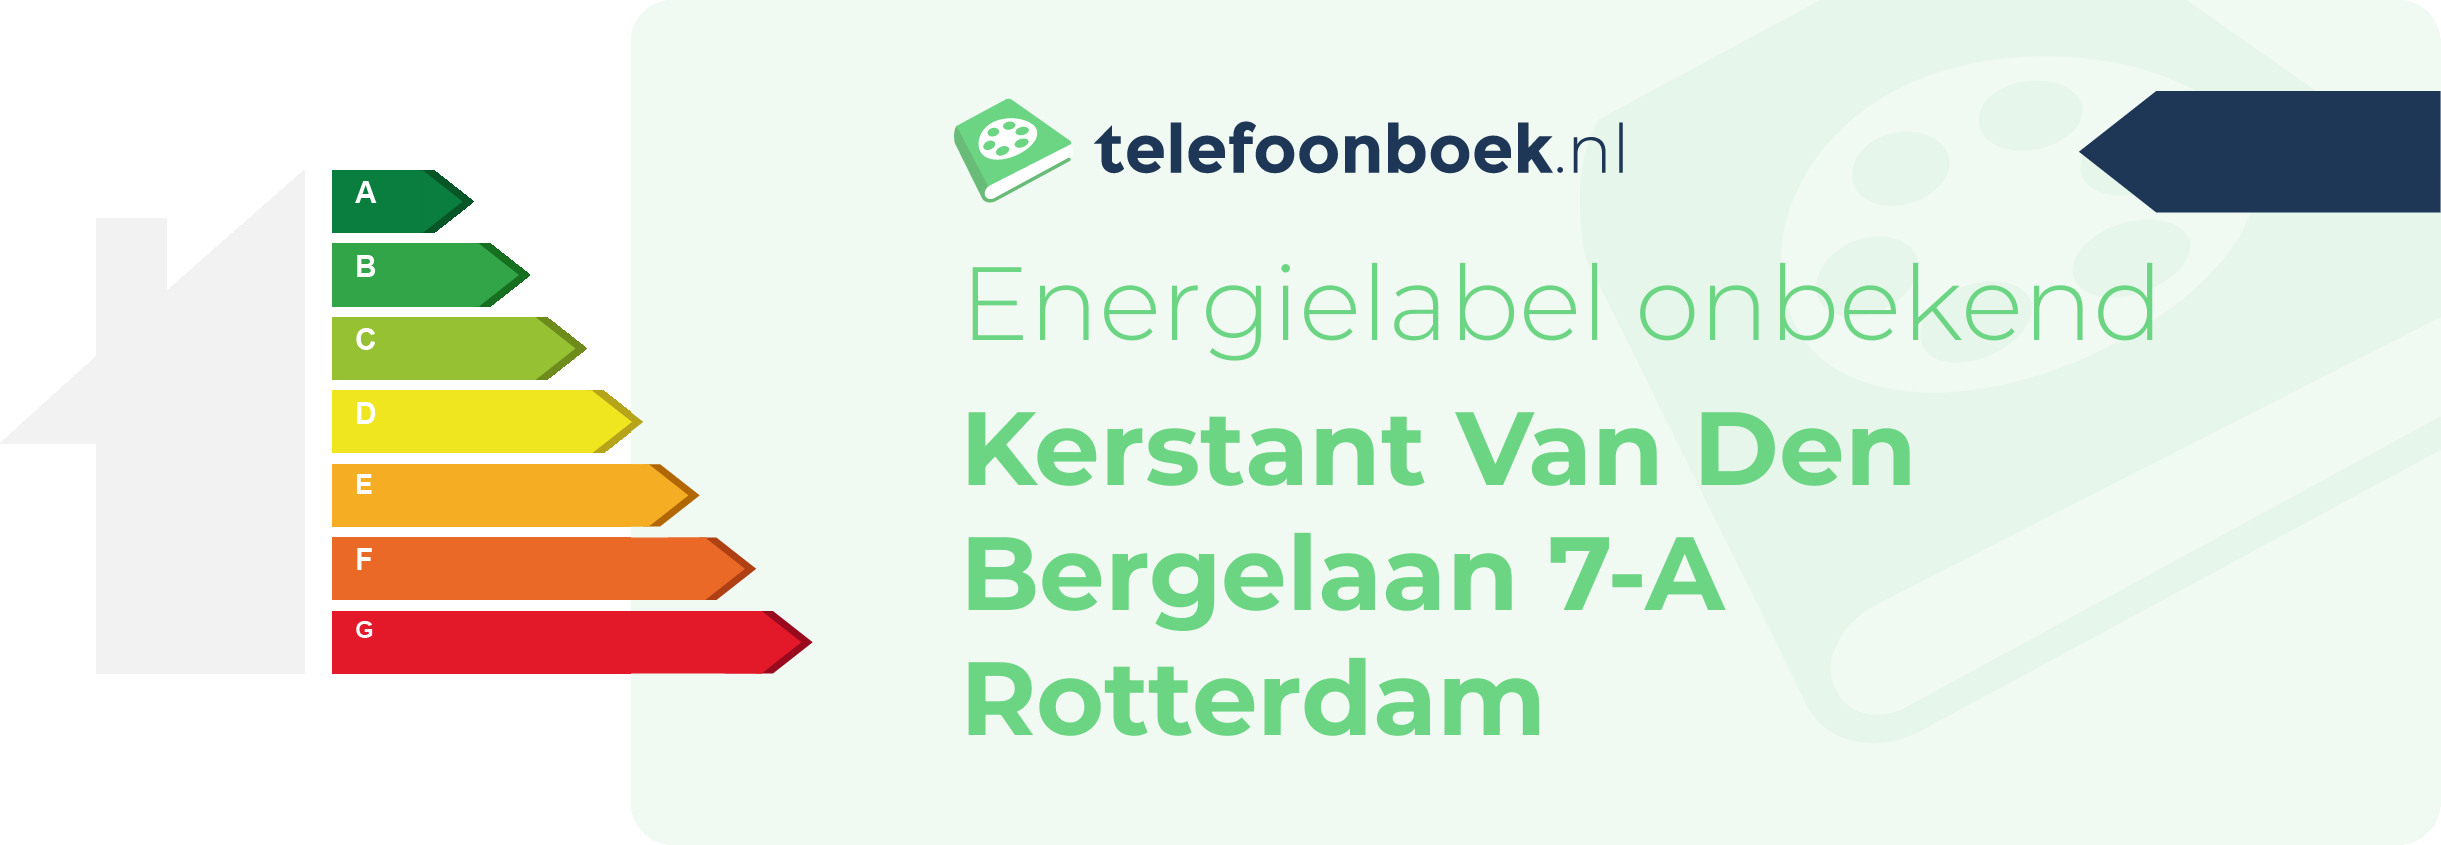 Energielabel Kerstant Van Den Bergelaan 7-A Rotterdam